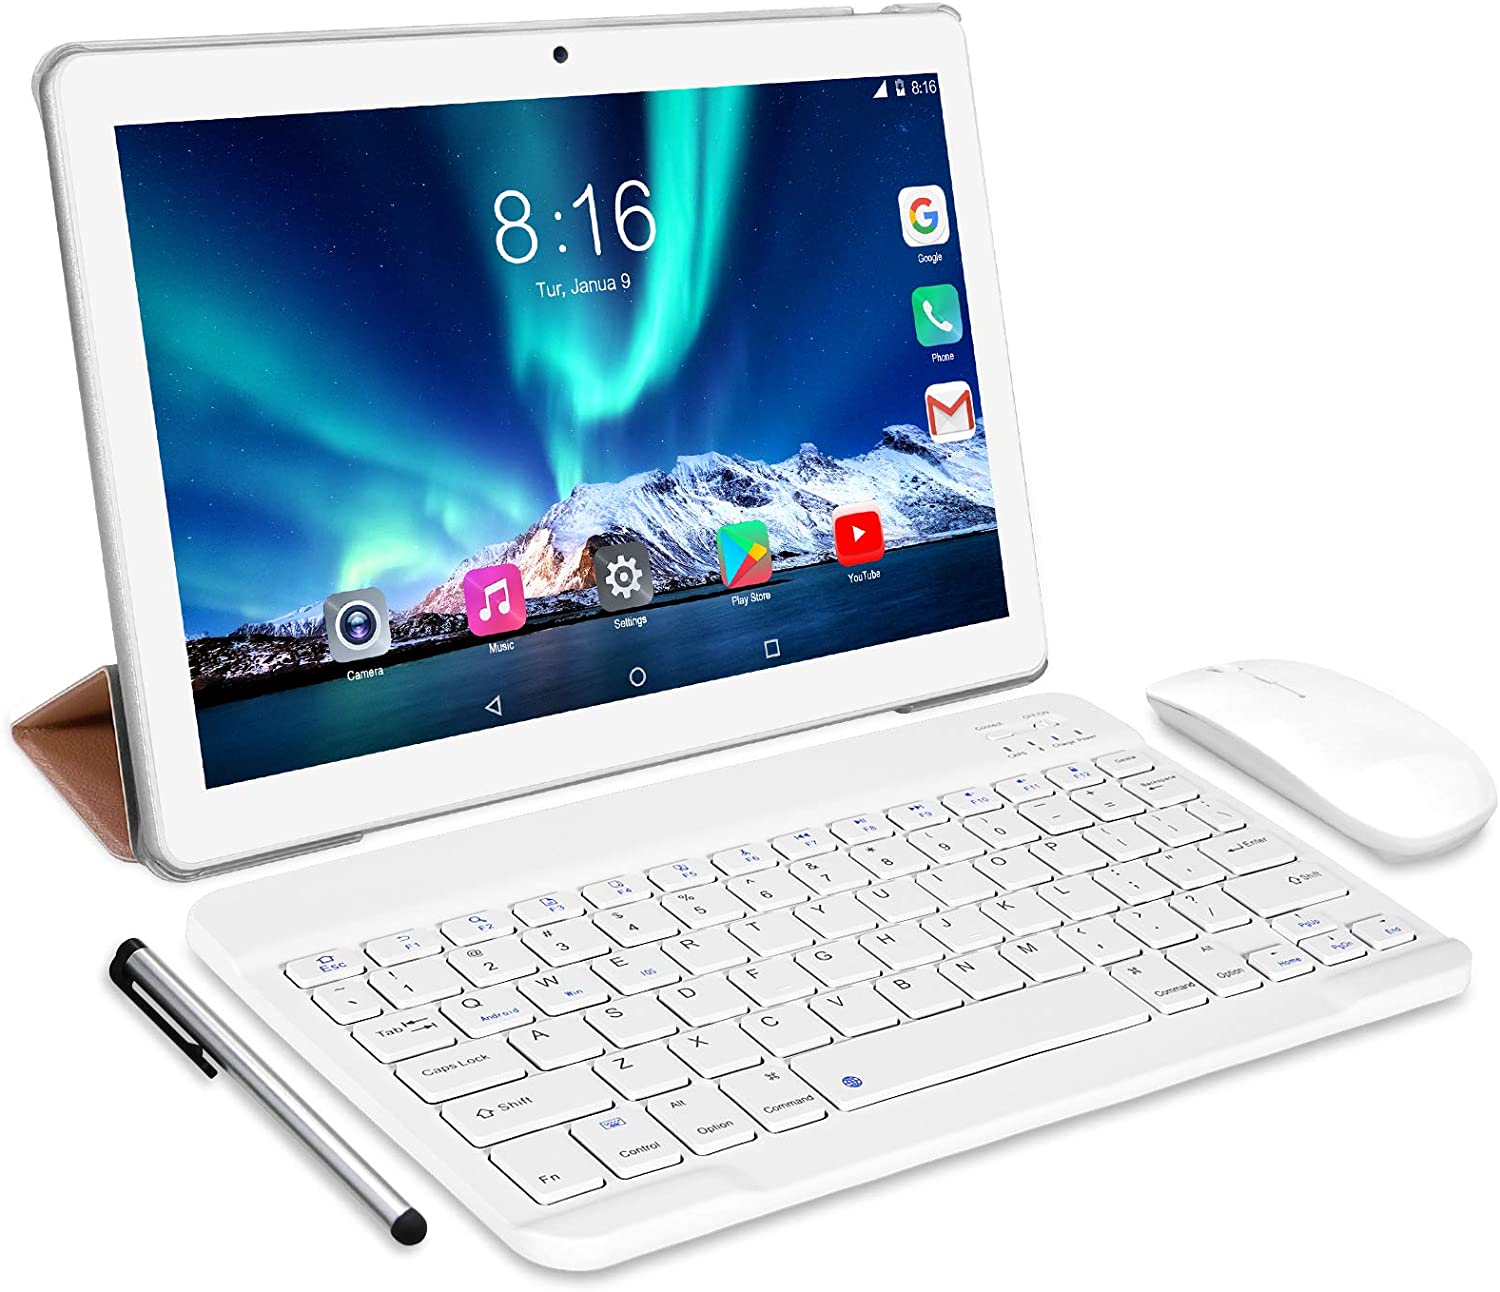 平板电脑10英寸8核-经谷歌GMS 4G LTE平板电脑认证的TOSCIDO Android 10.0、4 GB RAM和64 GB ROM、双SIM卡、GPS、WiFi、蓝牙键盘、鼠标、平板电脑外壳等–银色